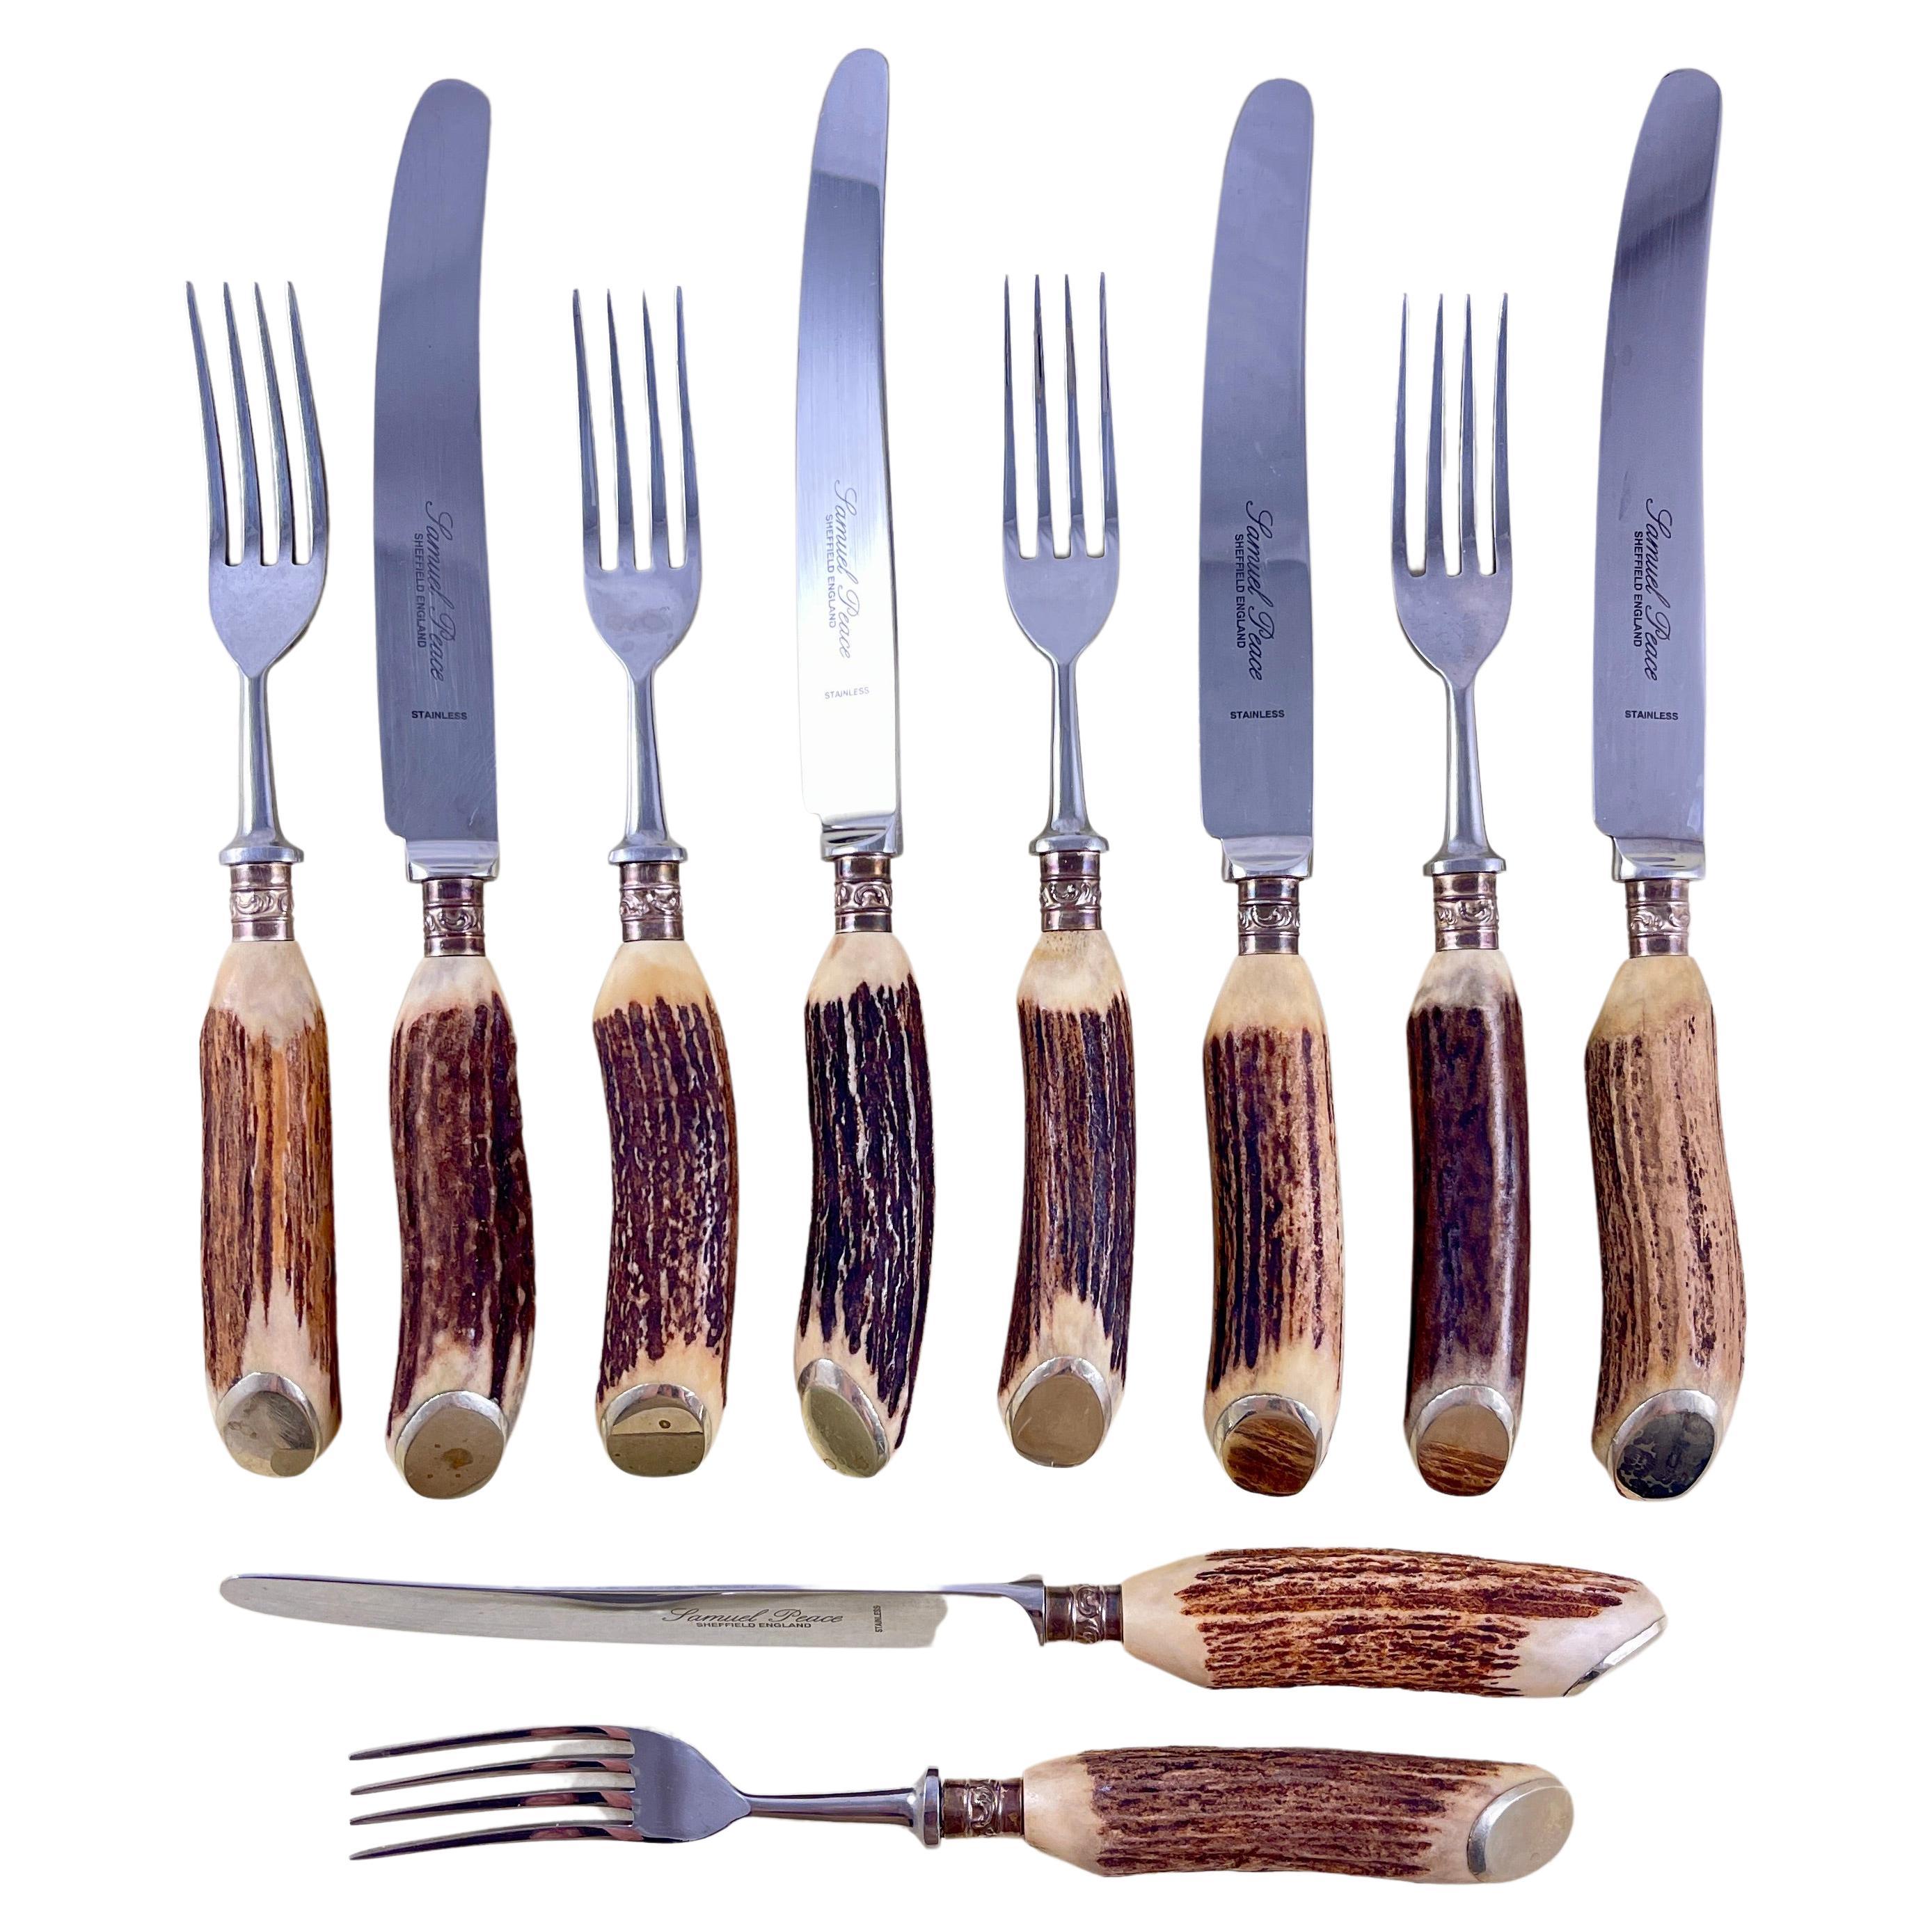 Samuel Peace - Ensemble de couteaux et fourchettes à poignée en bois de cerf, 10 pièces